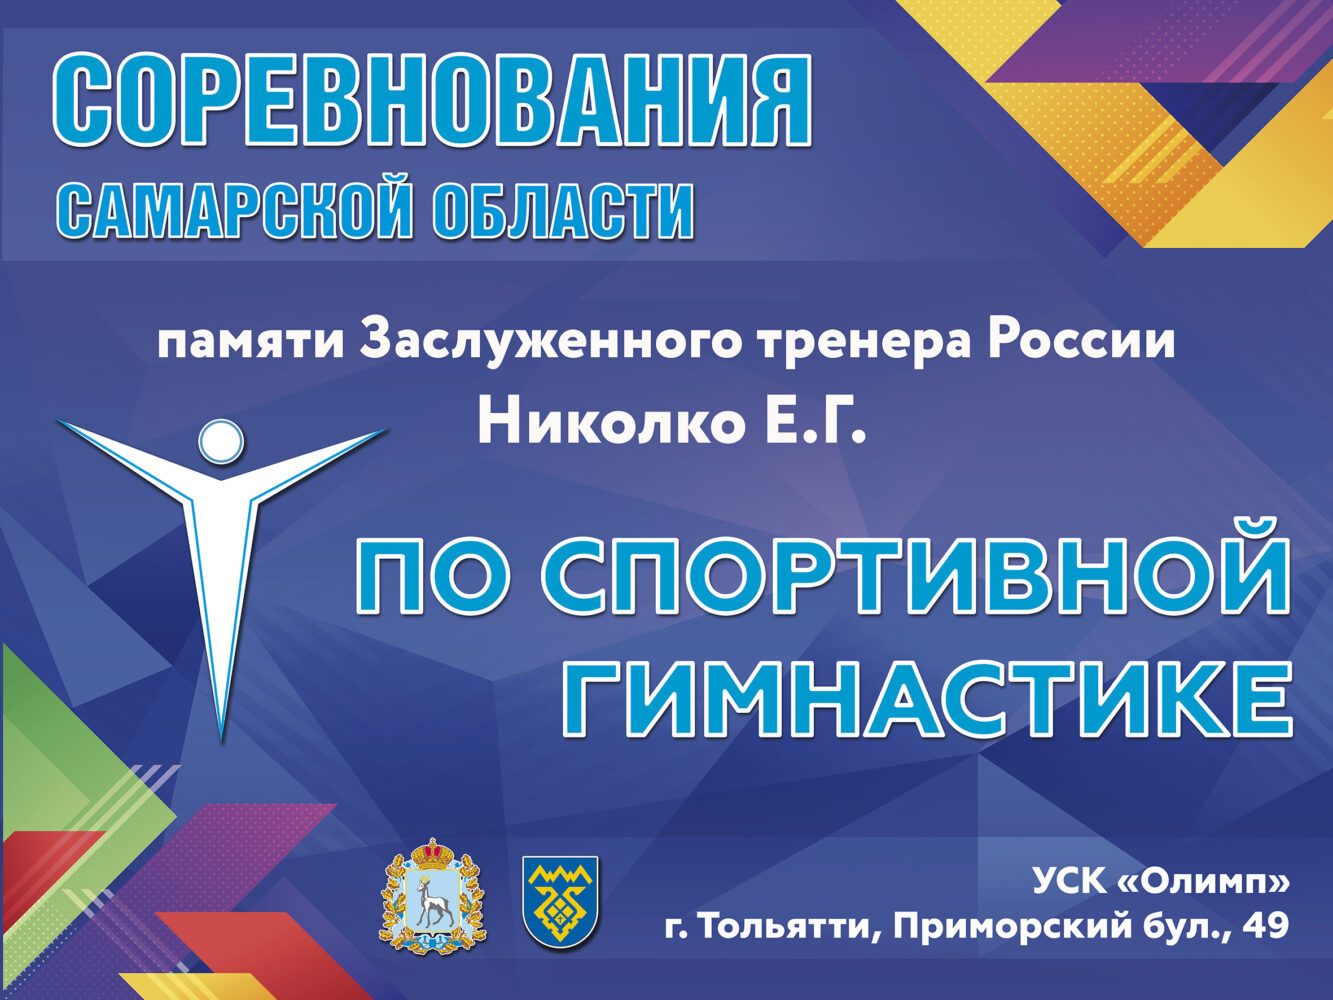 Всероссийские соревнования, посвященные памяти заслуженного тренера России Евгения Николко.